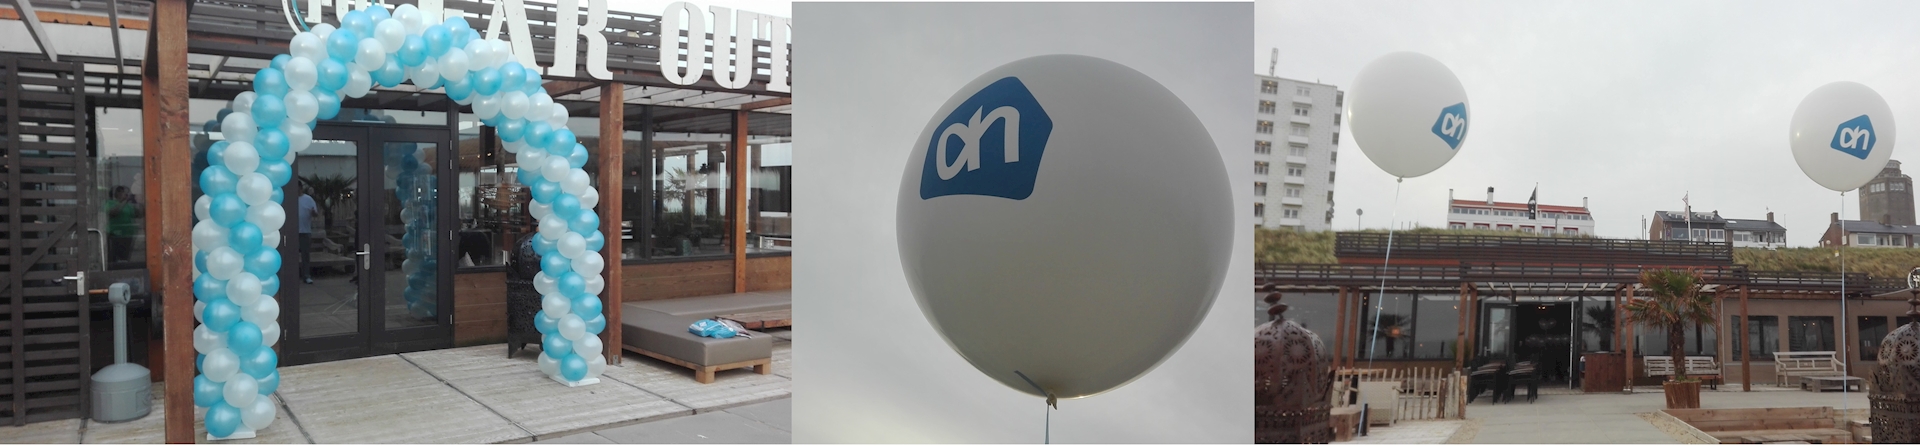 ballonnenboog en reuze helium ballonnen bedrukt met logo van Albert Heijn voor feest in Zandvoort